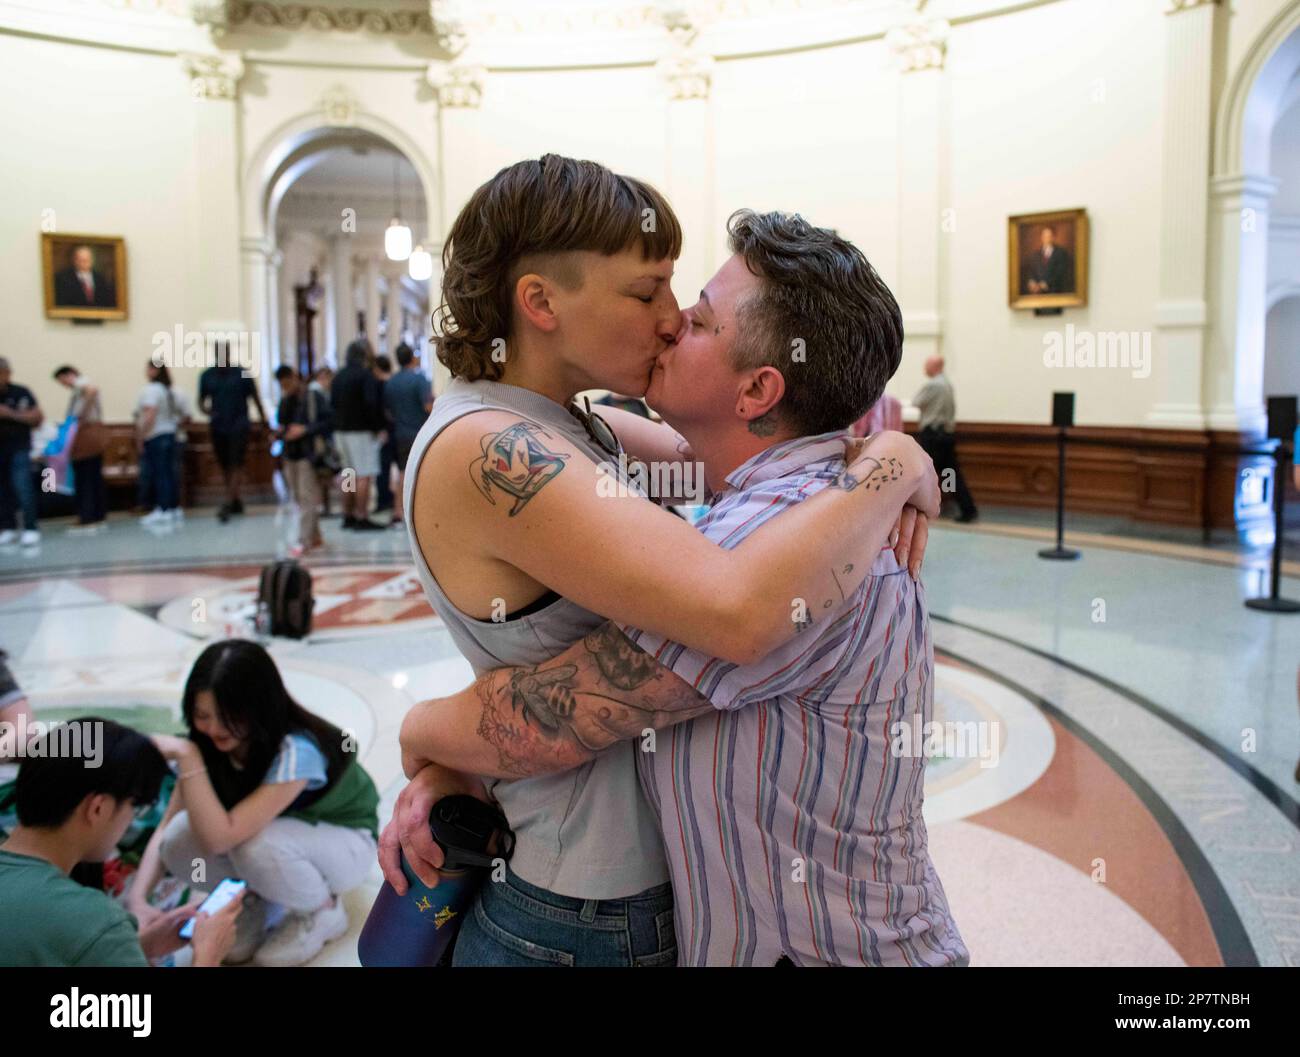 Kendall Jackson (à gauche) et Mac Eggimann (à droite) d'Austin s'embrassent dans la rotonde du Capitole du Texas en participant à un rassemblement pour les droits transgenres organisé par le réseau transgenre Education Network of Texas (TENT). Des dizaines de projets de loi anti-LGBTQ ont été déposés à la Chambre et au Sénat. Crédit : Bob Daemmrich/Alay Live News Banque D'Images